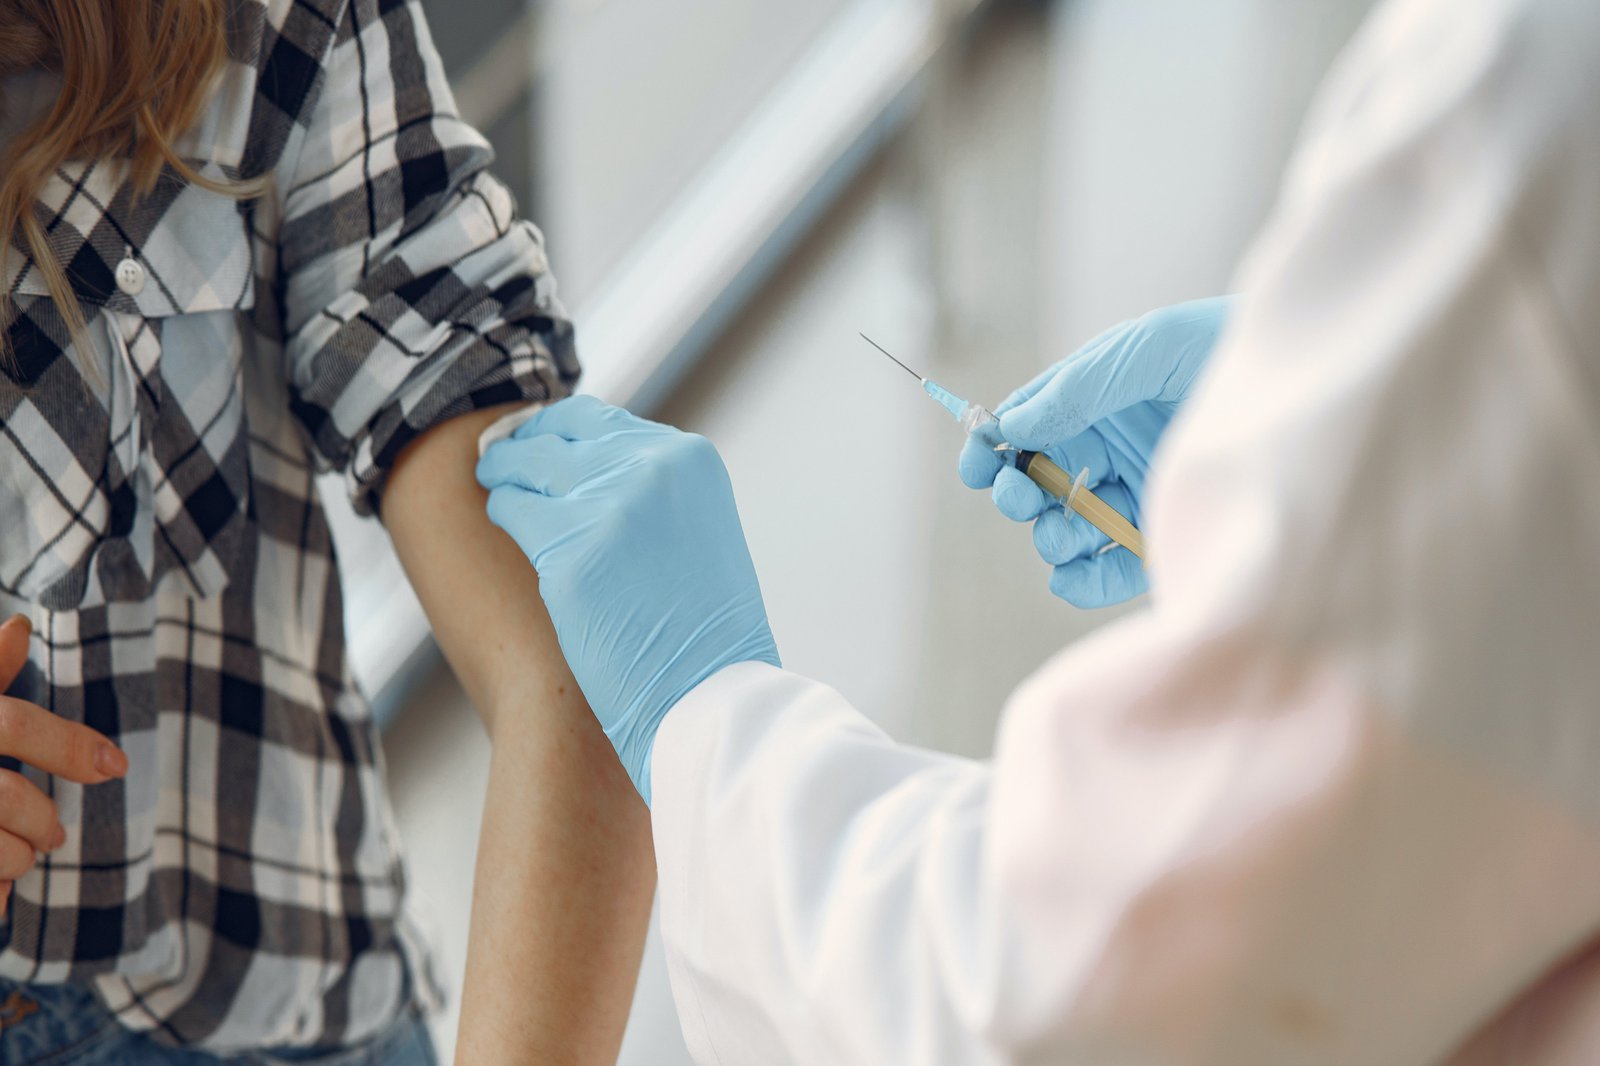 Szene, wo eine Impfspritze an einem Arm angesezt wird.